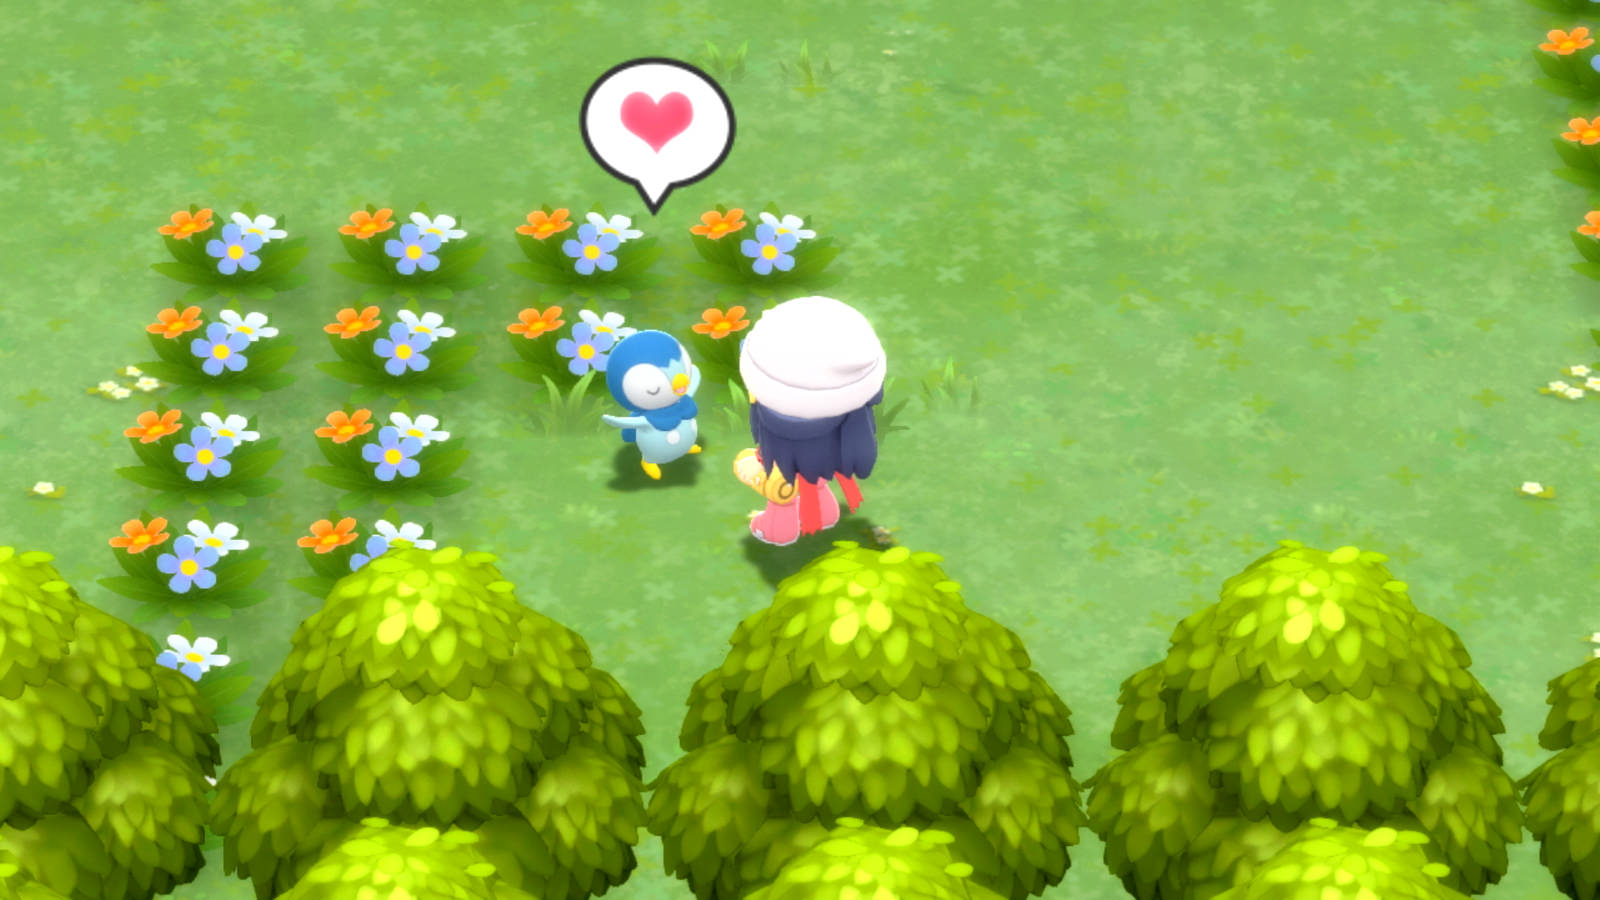 Finding the Fun in 'Pokemon Shining Pearl